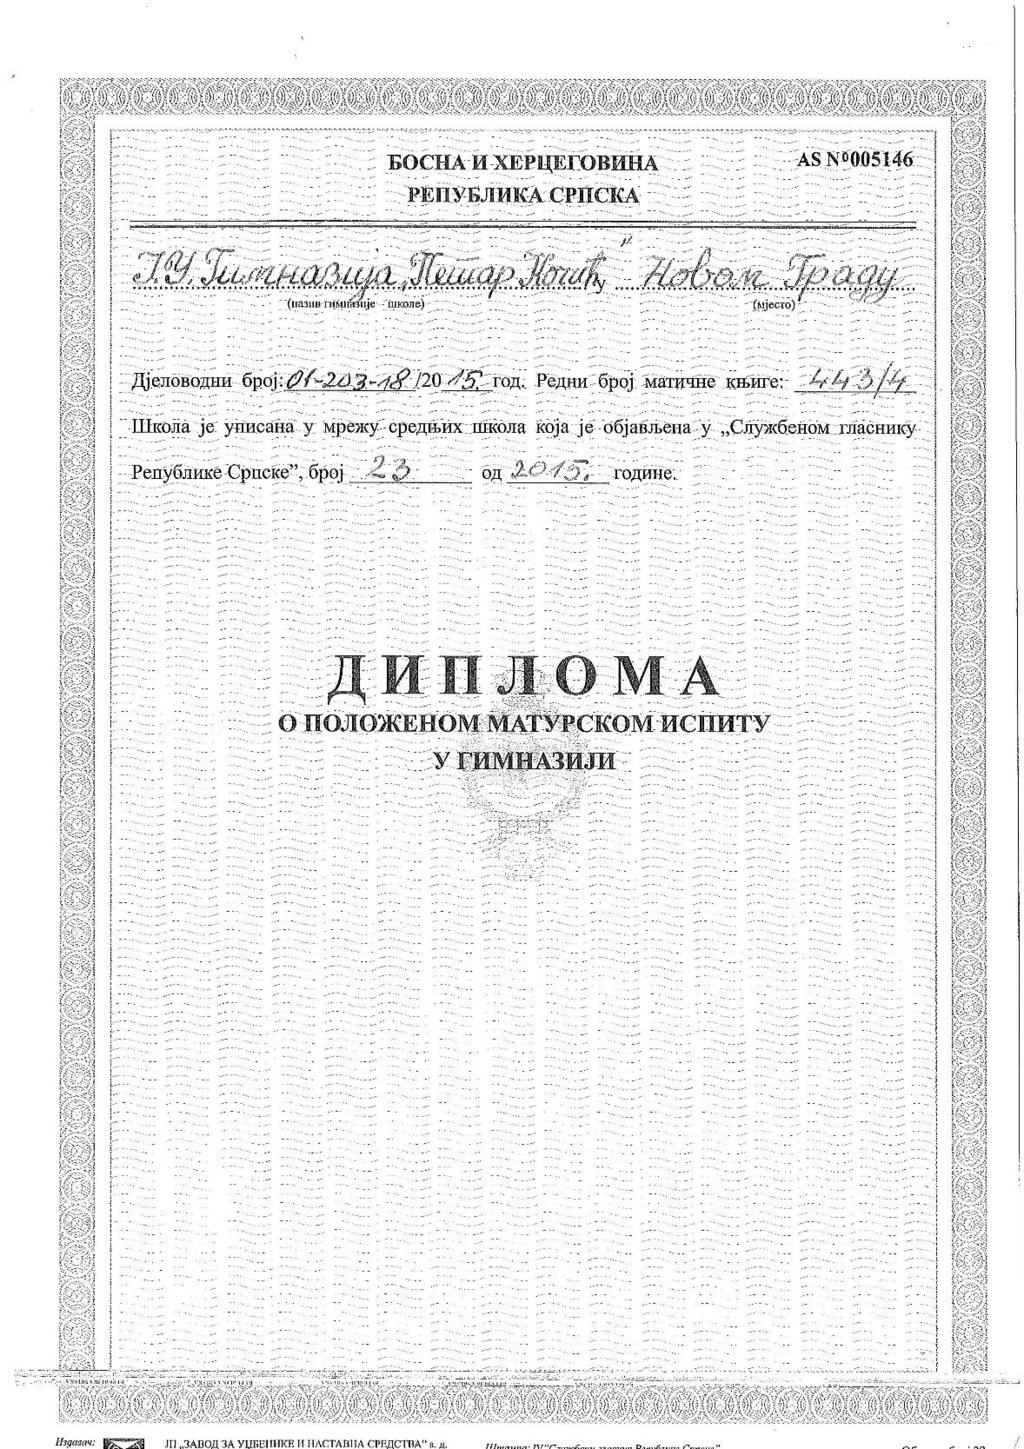 Matura-diploma (voorblad) Dit is het voorblad van een Diploma položenom